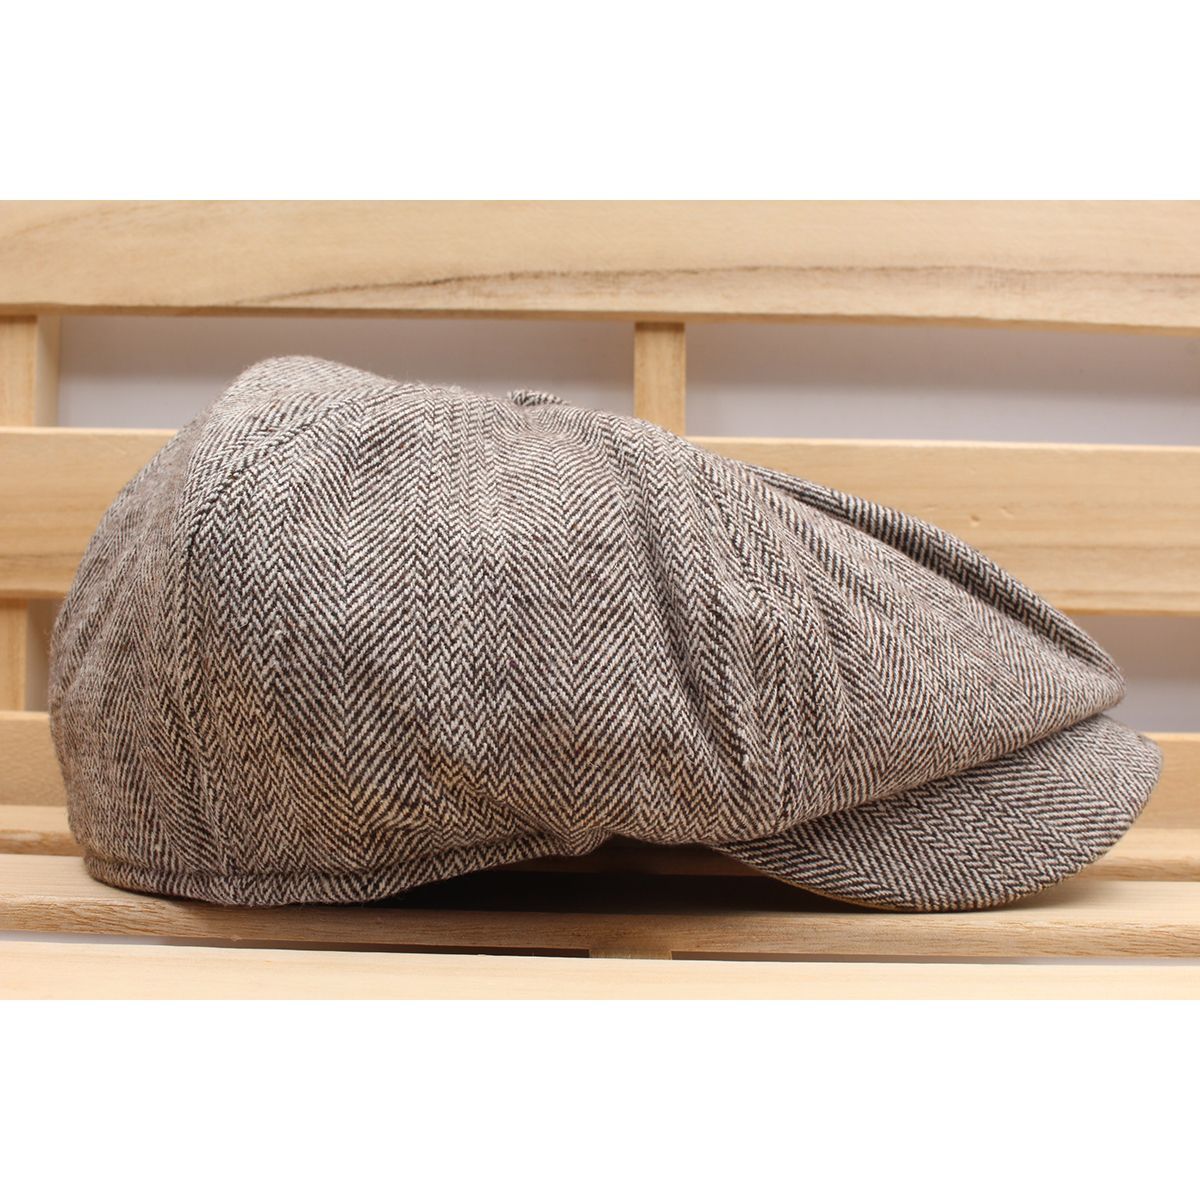 キャスケット帽子 杢柄 ツイード風 ヘリンボーン ウール混キャップ ハンチング帽子 58cm KC24-5 - メルカリ